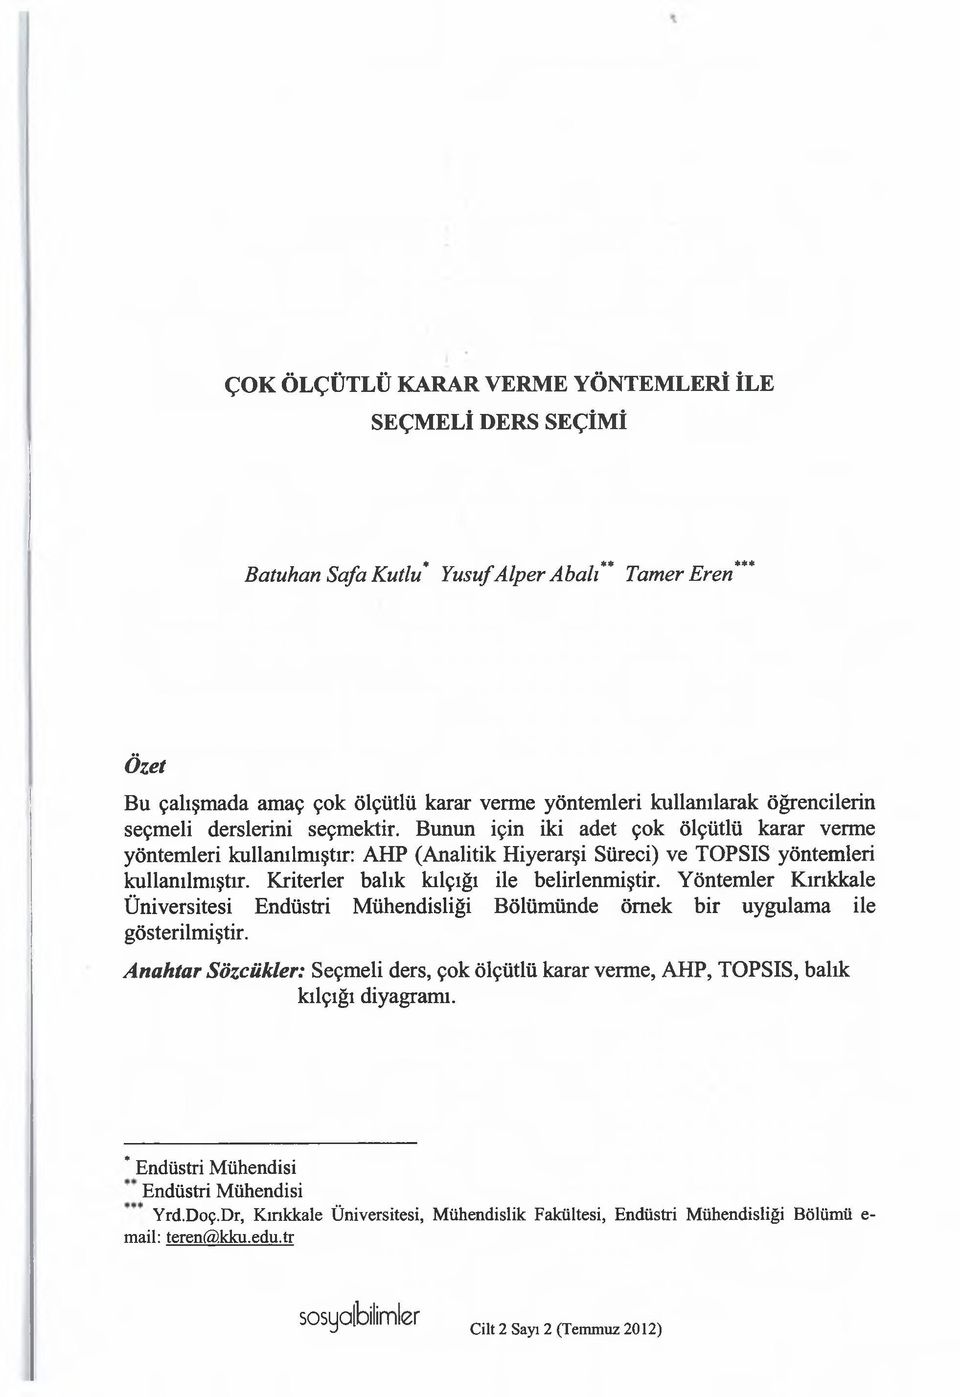 Kriterler balık kılçığı ile belirlenmiştir. Yöntemler Kırıkkale Üniversitesi Endüstri Mühendisliği Bölümünde örnek bir uygulama ile gösterilmiştir.